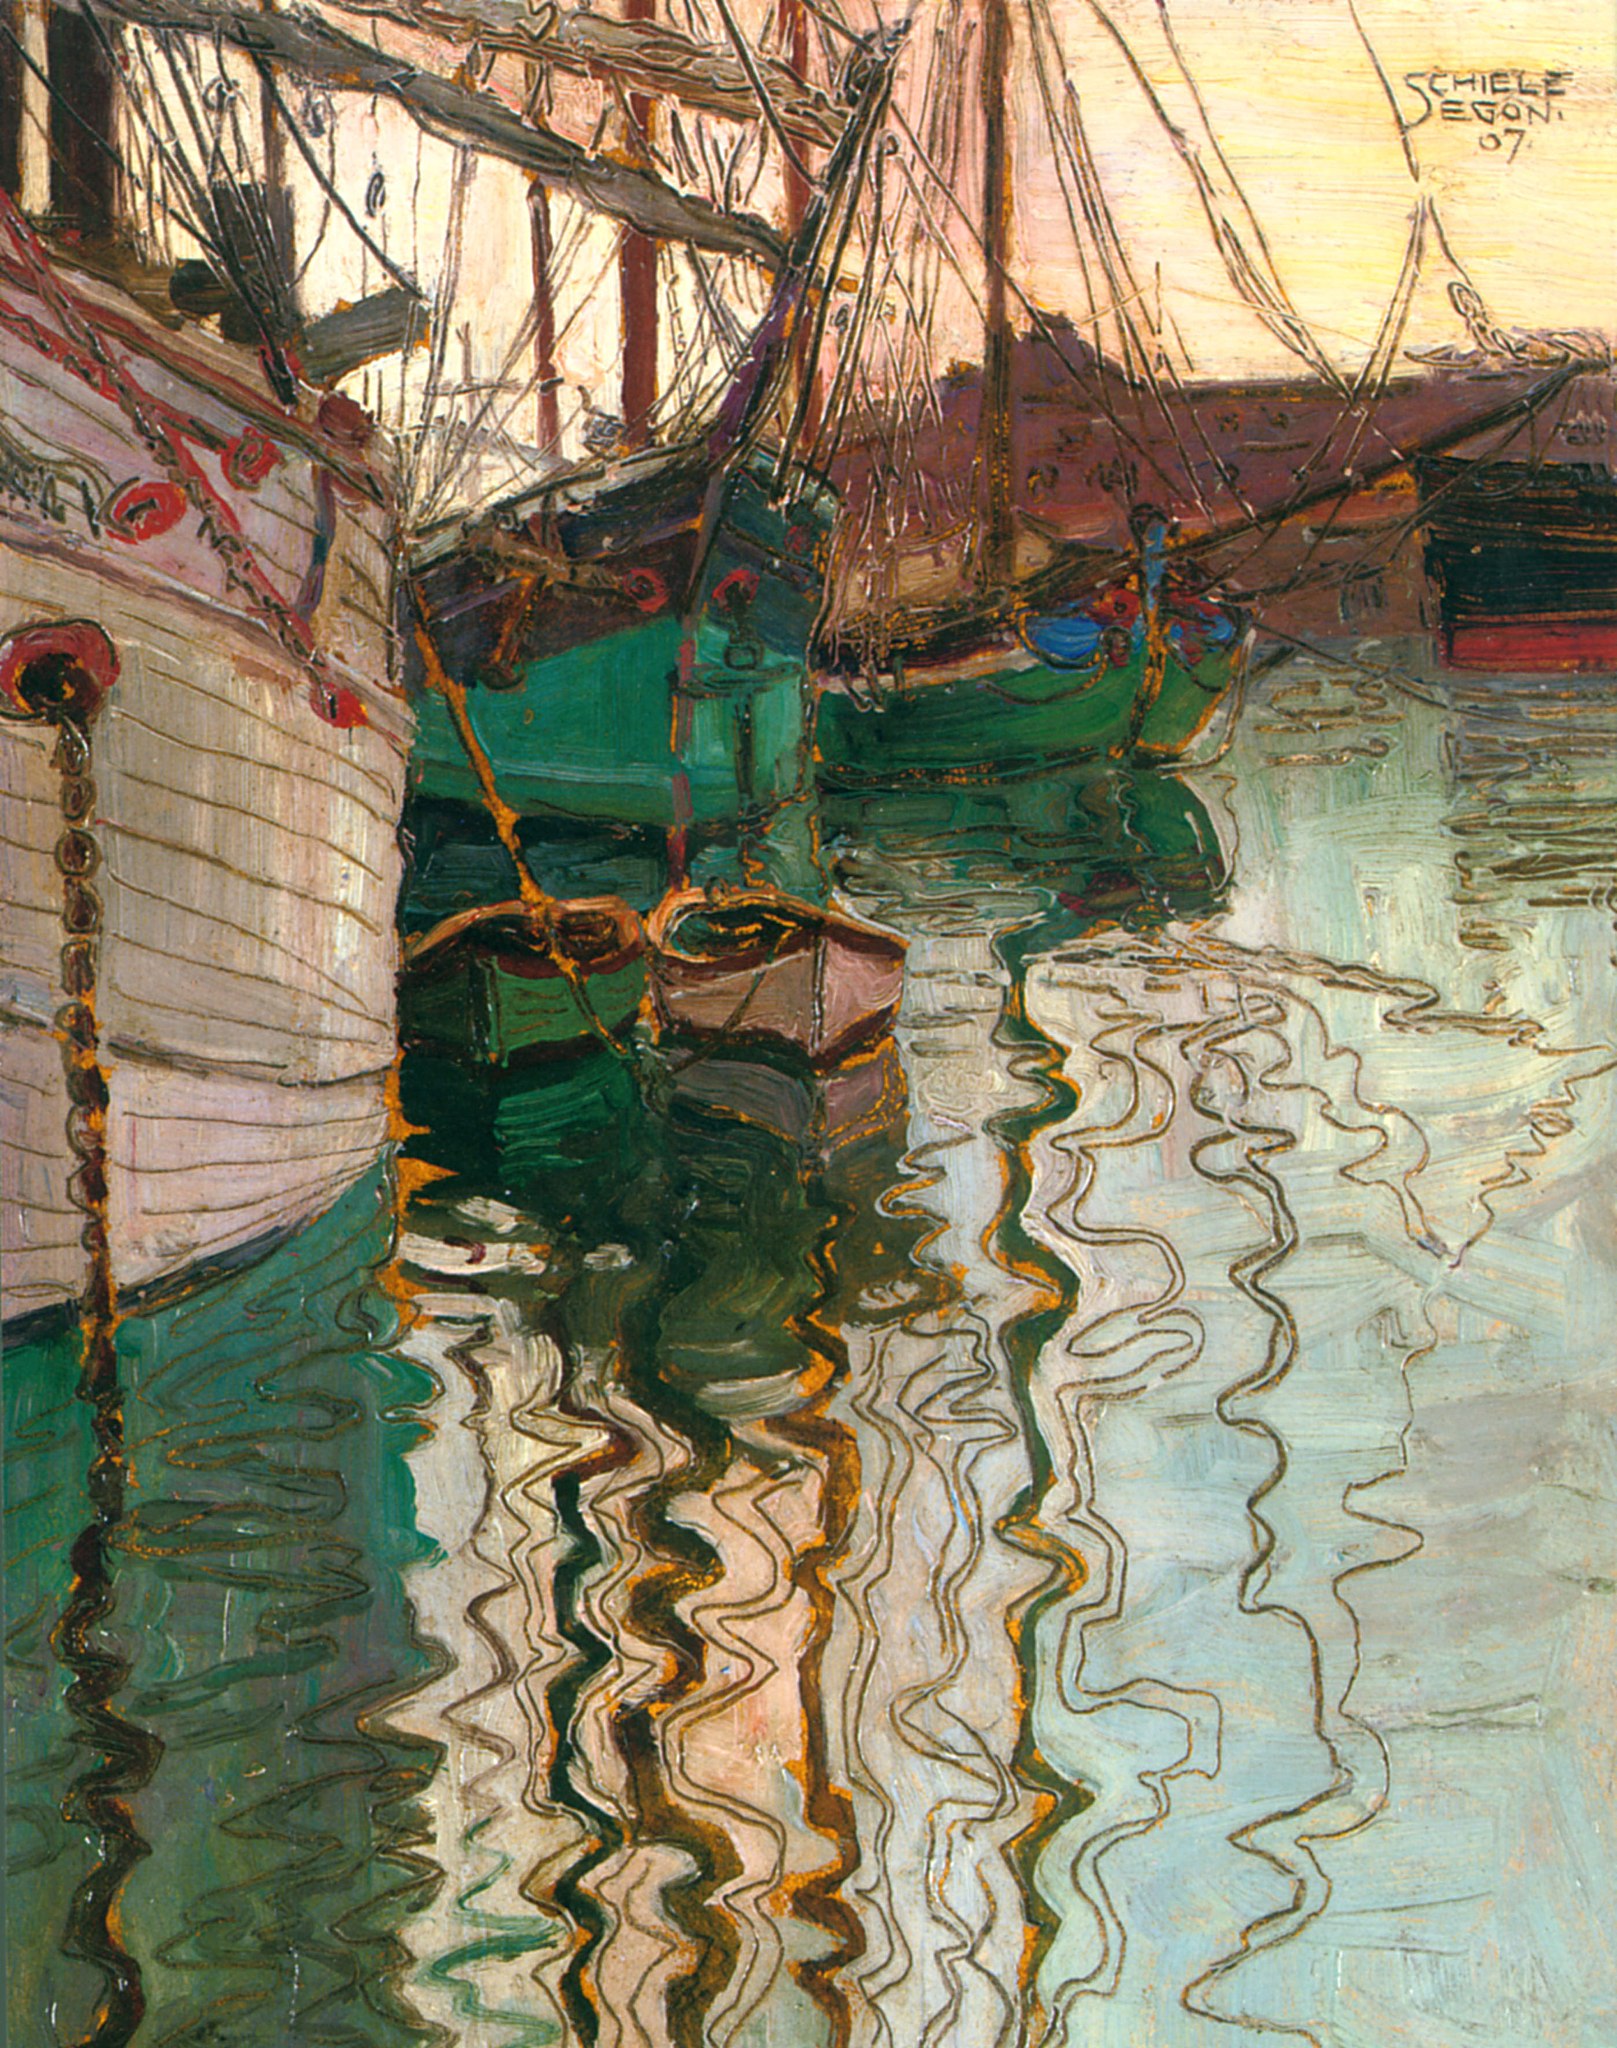 ट्राइस्टे का बंदरगाह by Egon Schiele - 1907 - 24.6 x 18 cm 